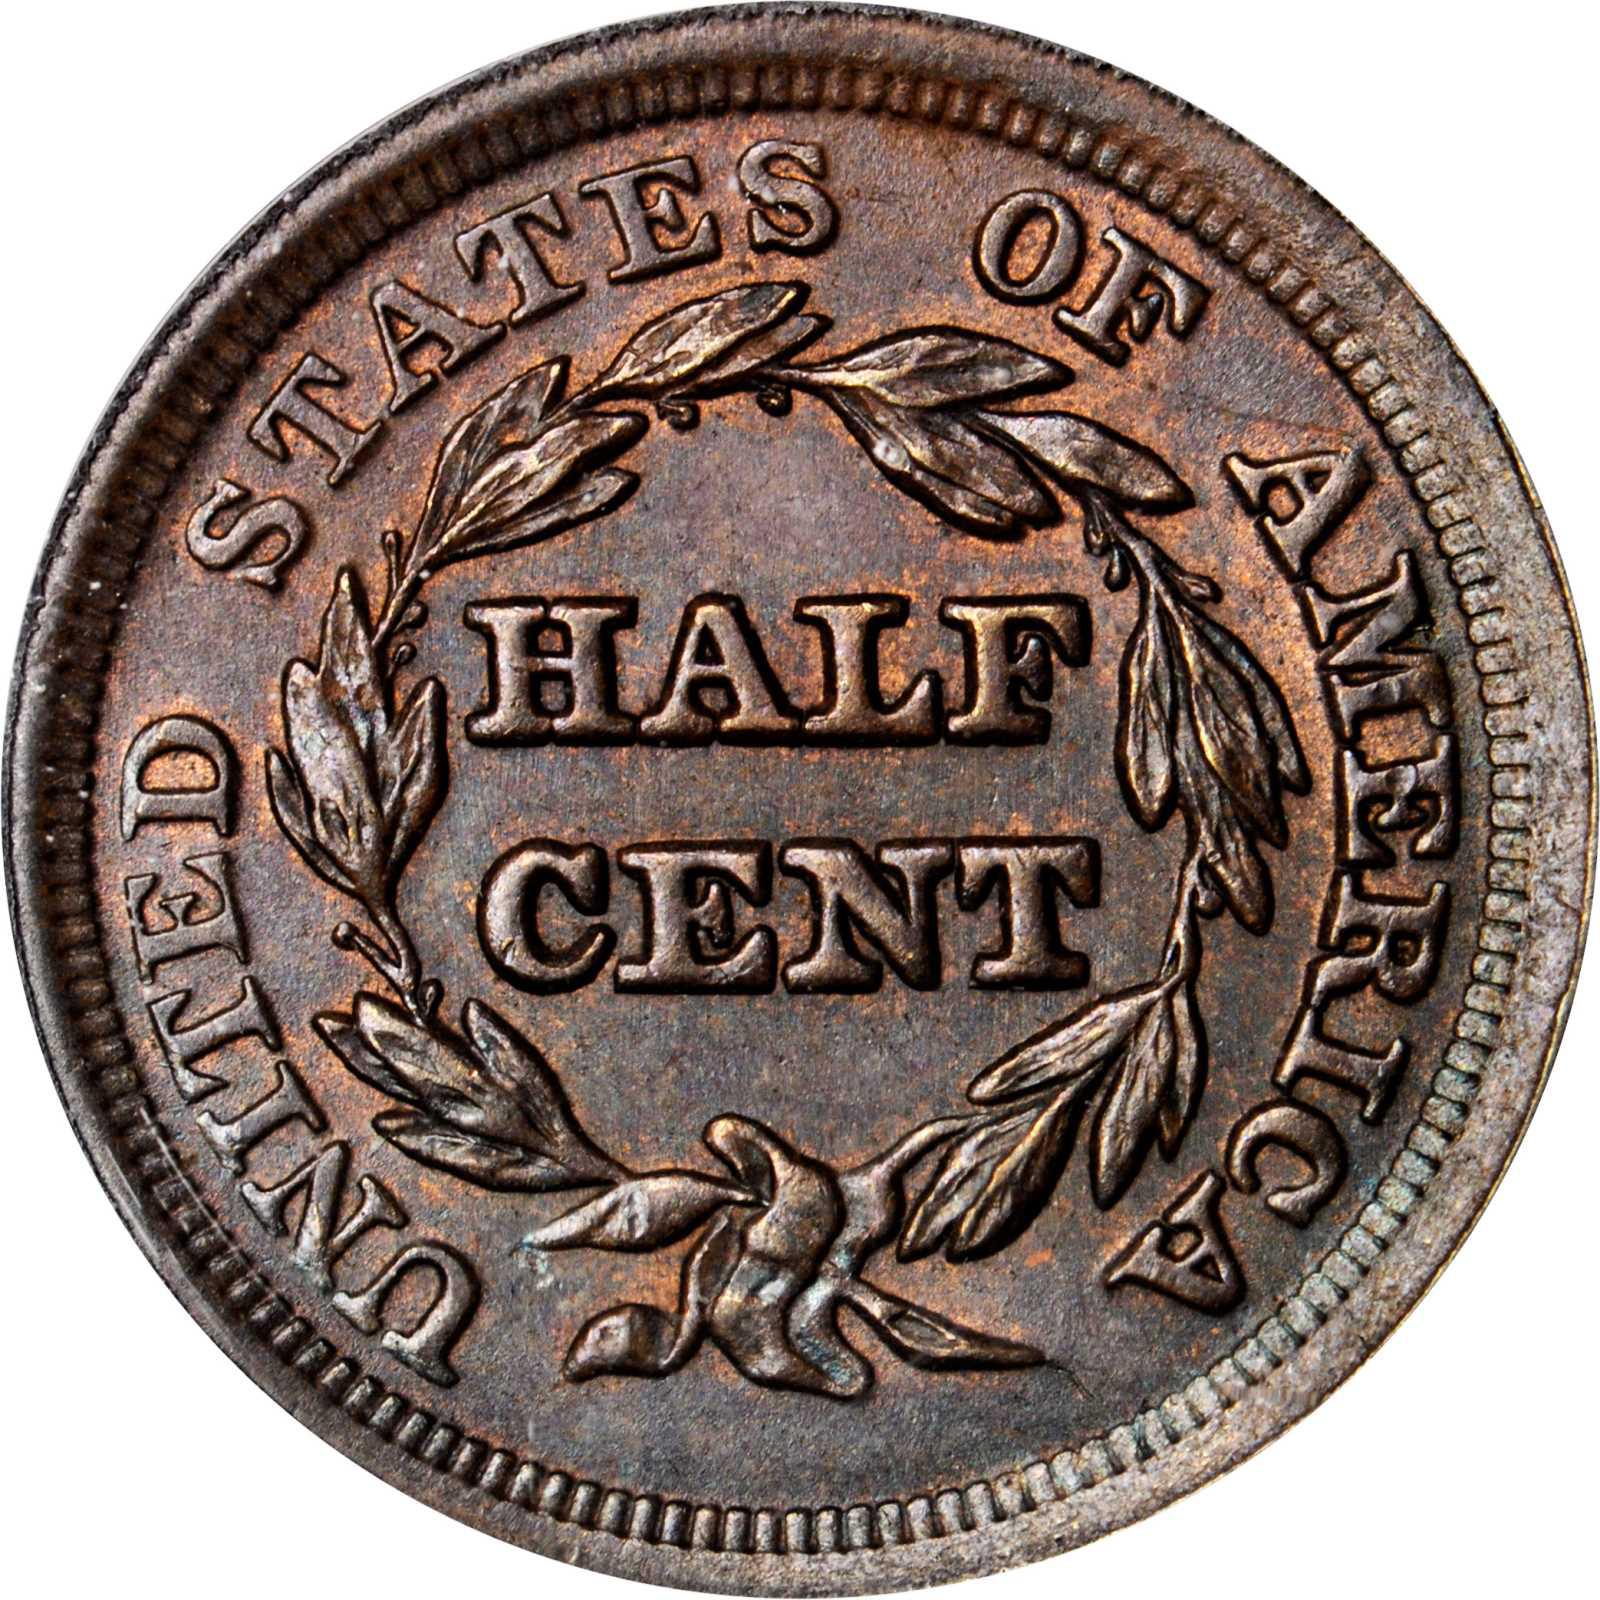 Coins & Paper Money,Estate Find 1853 Braided Hair Half Cent #d34287,3rd  street hardware